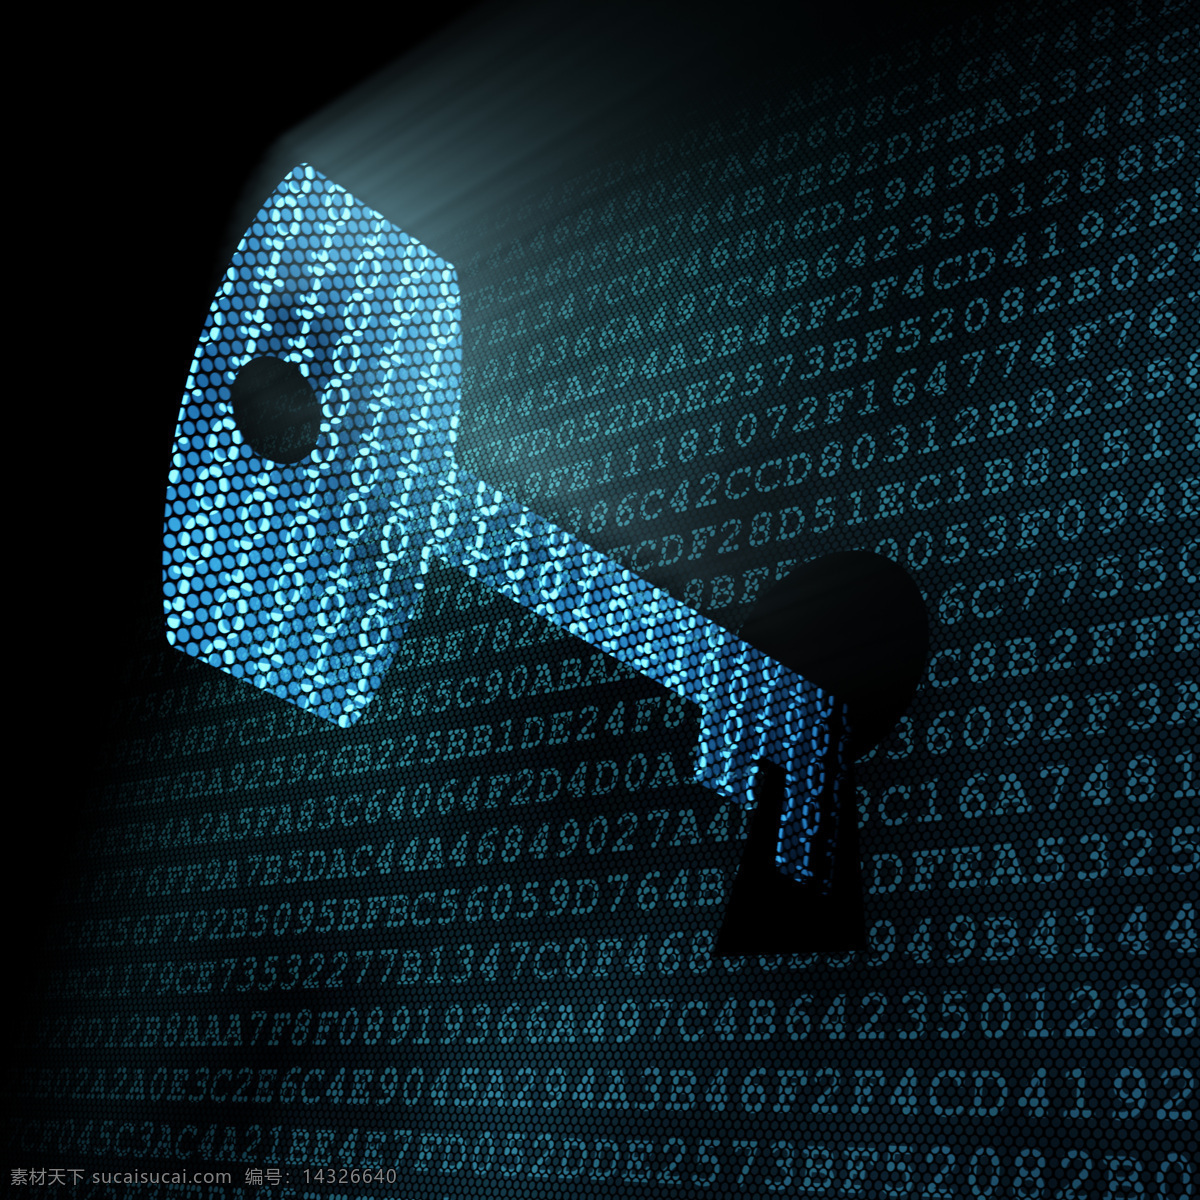 钥匙密码 钥匙 安全密保 安全密码 账号密码 信息安全 数字信息 其他类别 生活百科 黑色